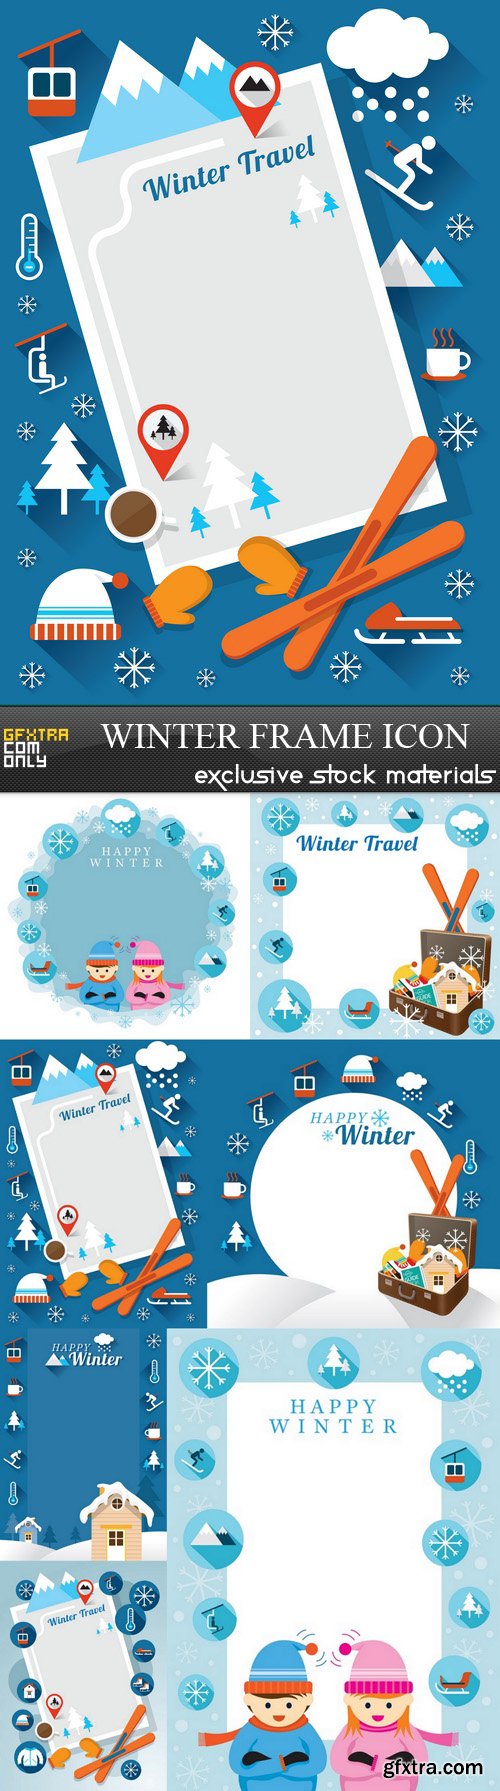 Winter Frame Icon - 7 EPS